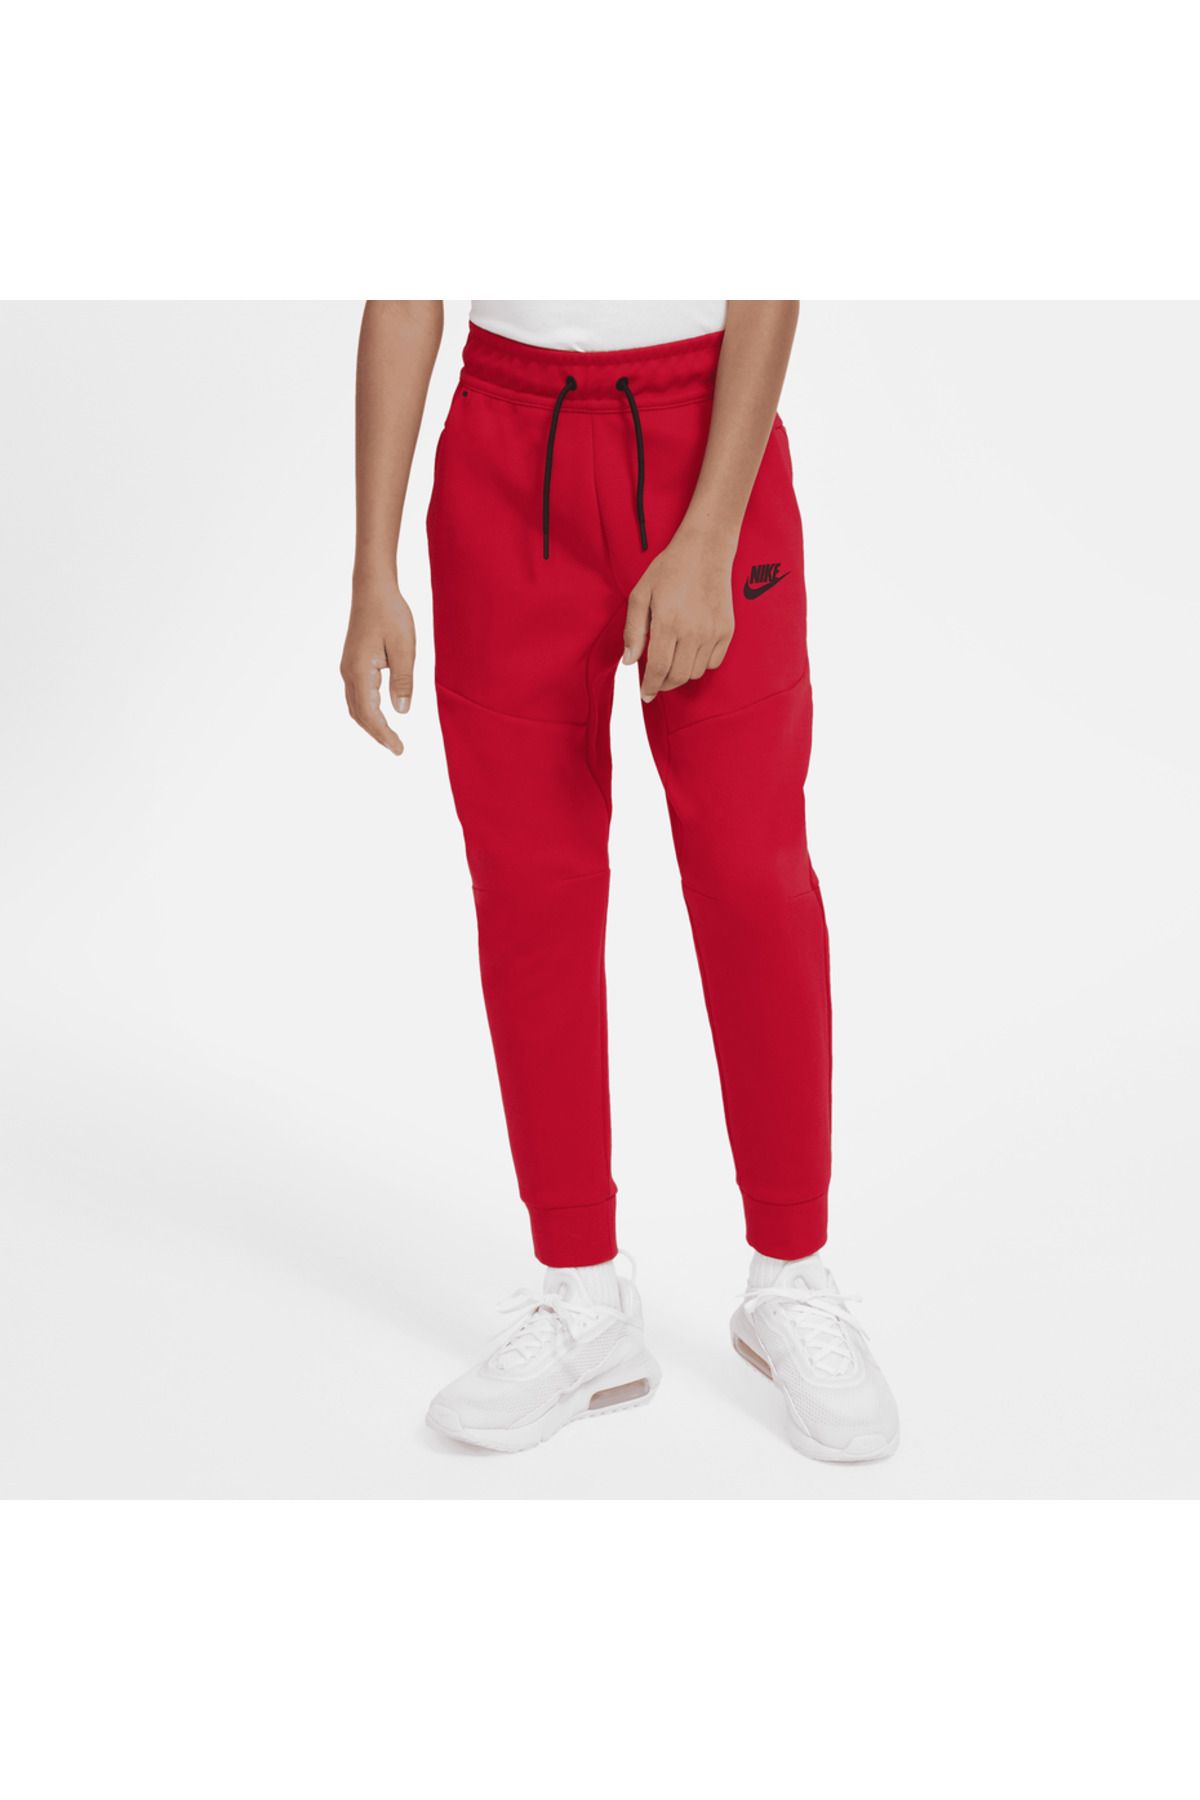 Nike Sportswear Tech Fleece Trousers Kırmızı Çocuk Eşofman Altı CU9213-657